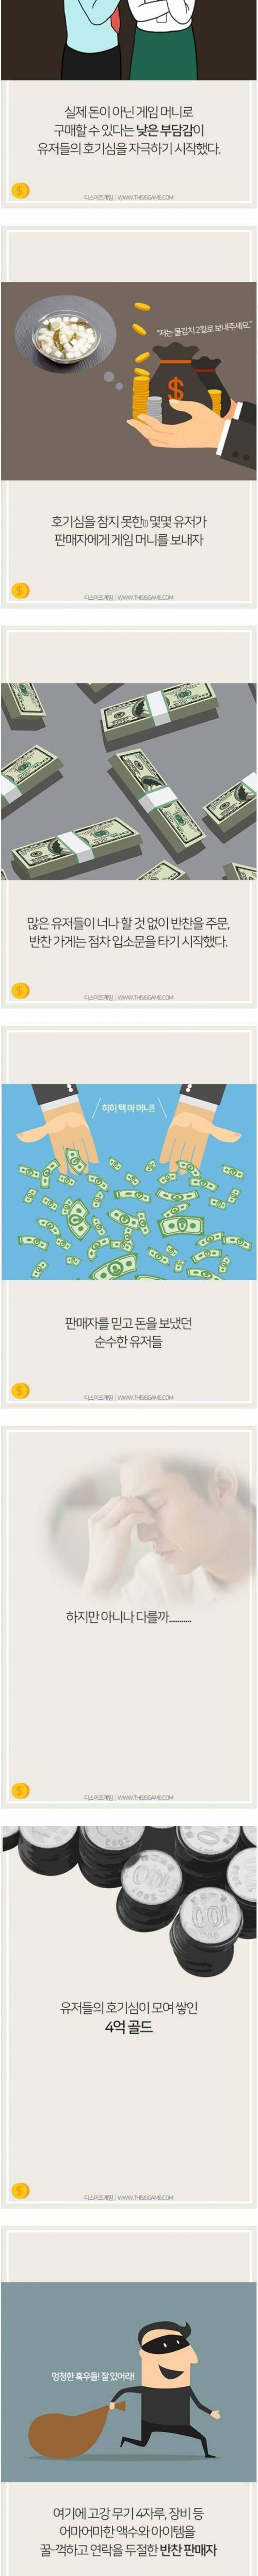 [스압] 전설의 마영전 '간장게장 사건'